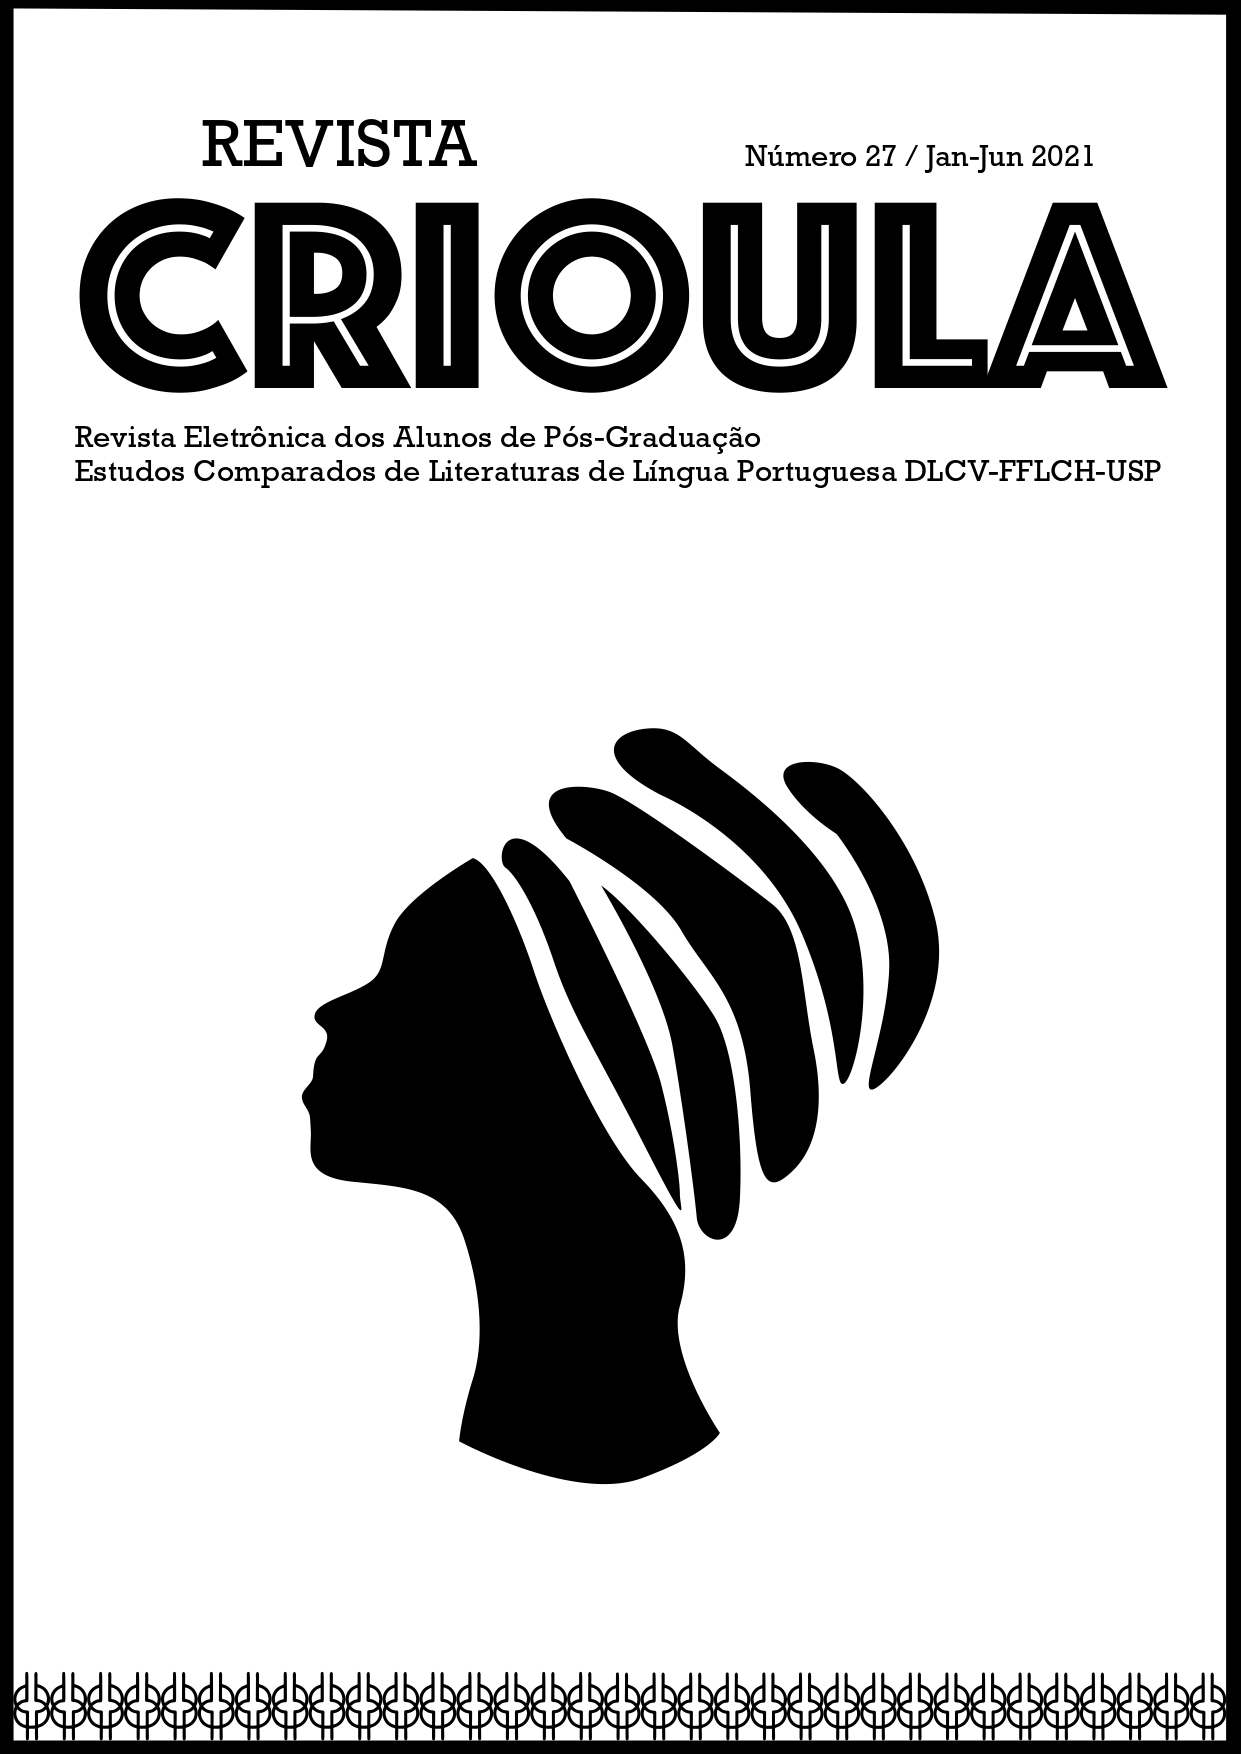 Capa da Revista Crioula em que há o desenho de uma mulher negra de perfil